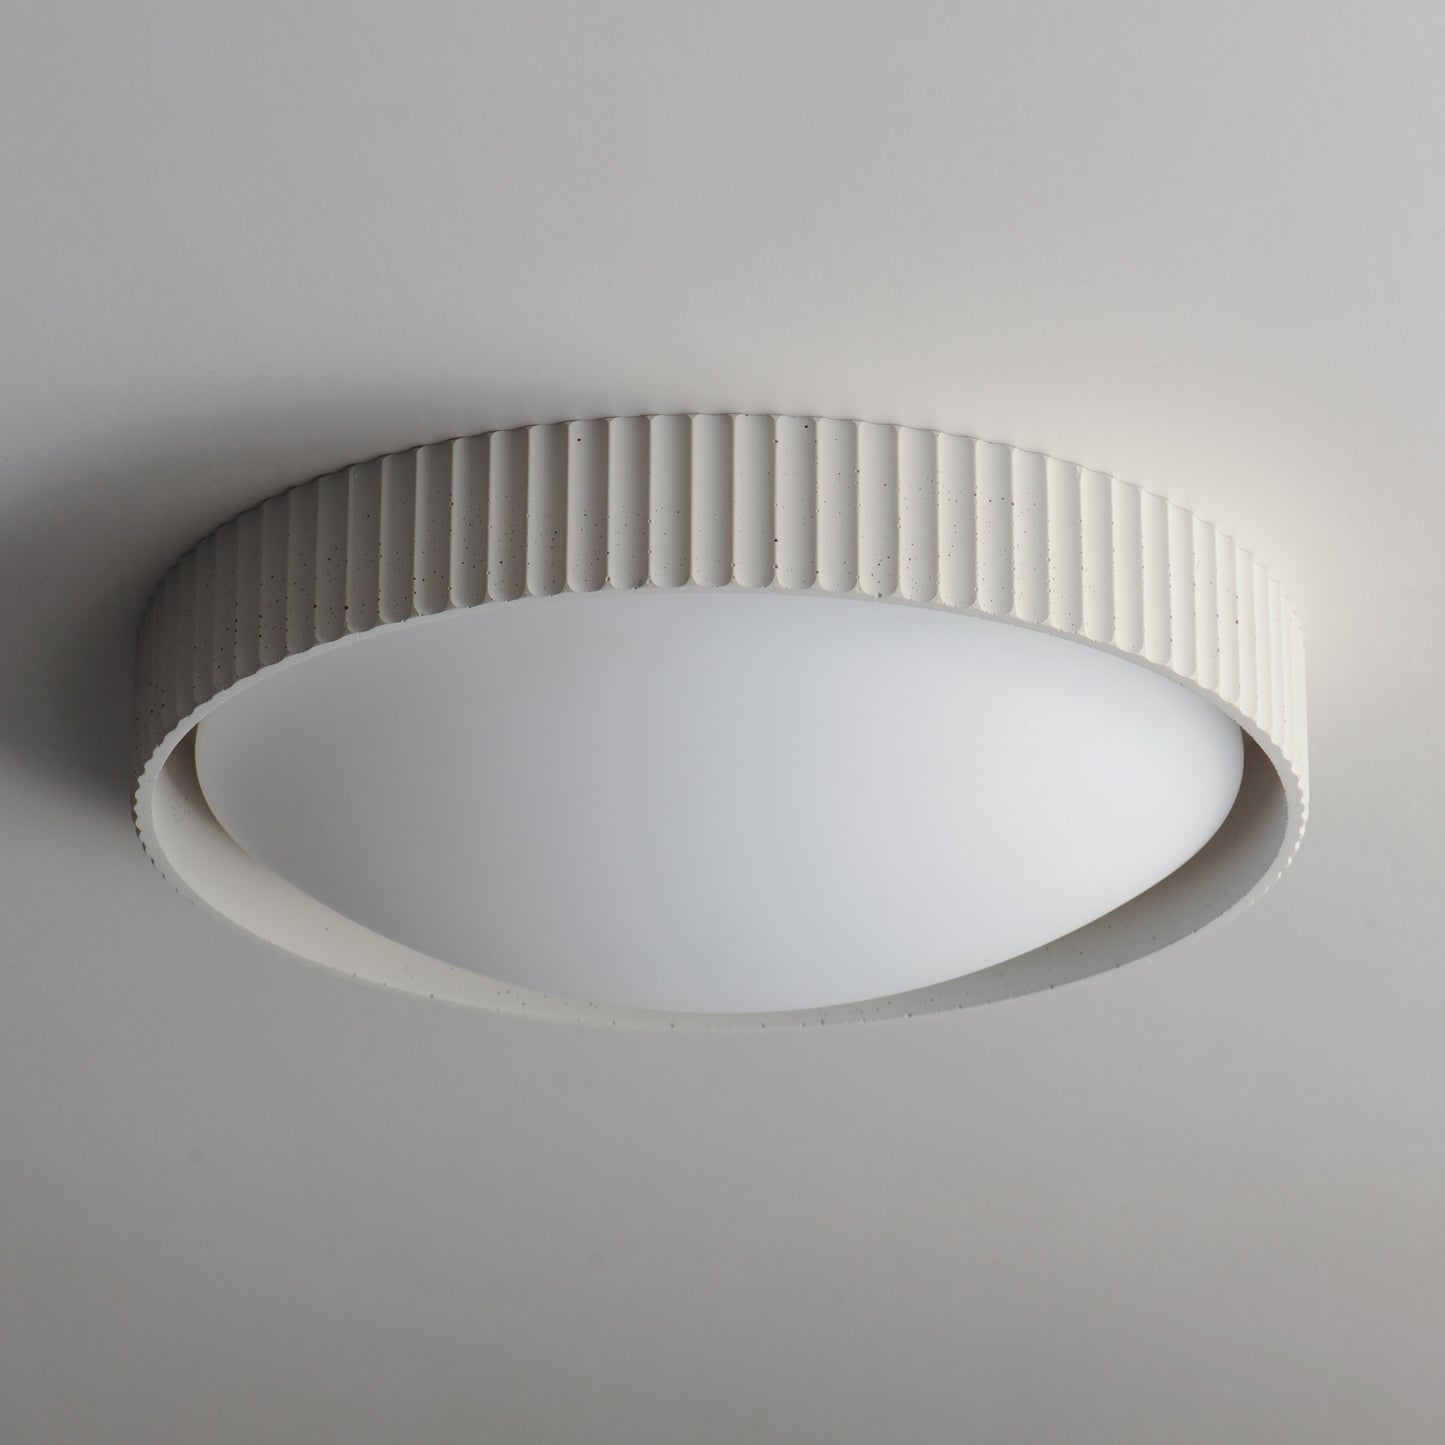 E25058-CHK - Souffle 18" Flush Mount Ceiling Light - Chaulk White